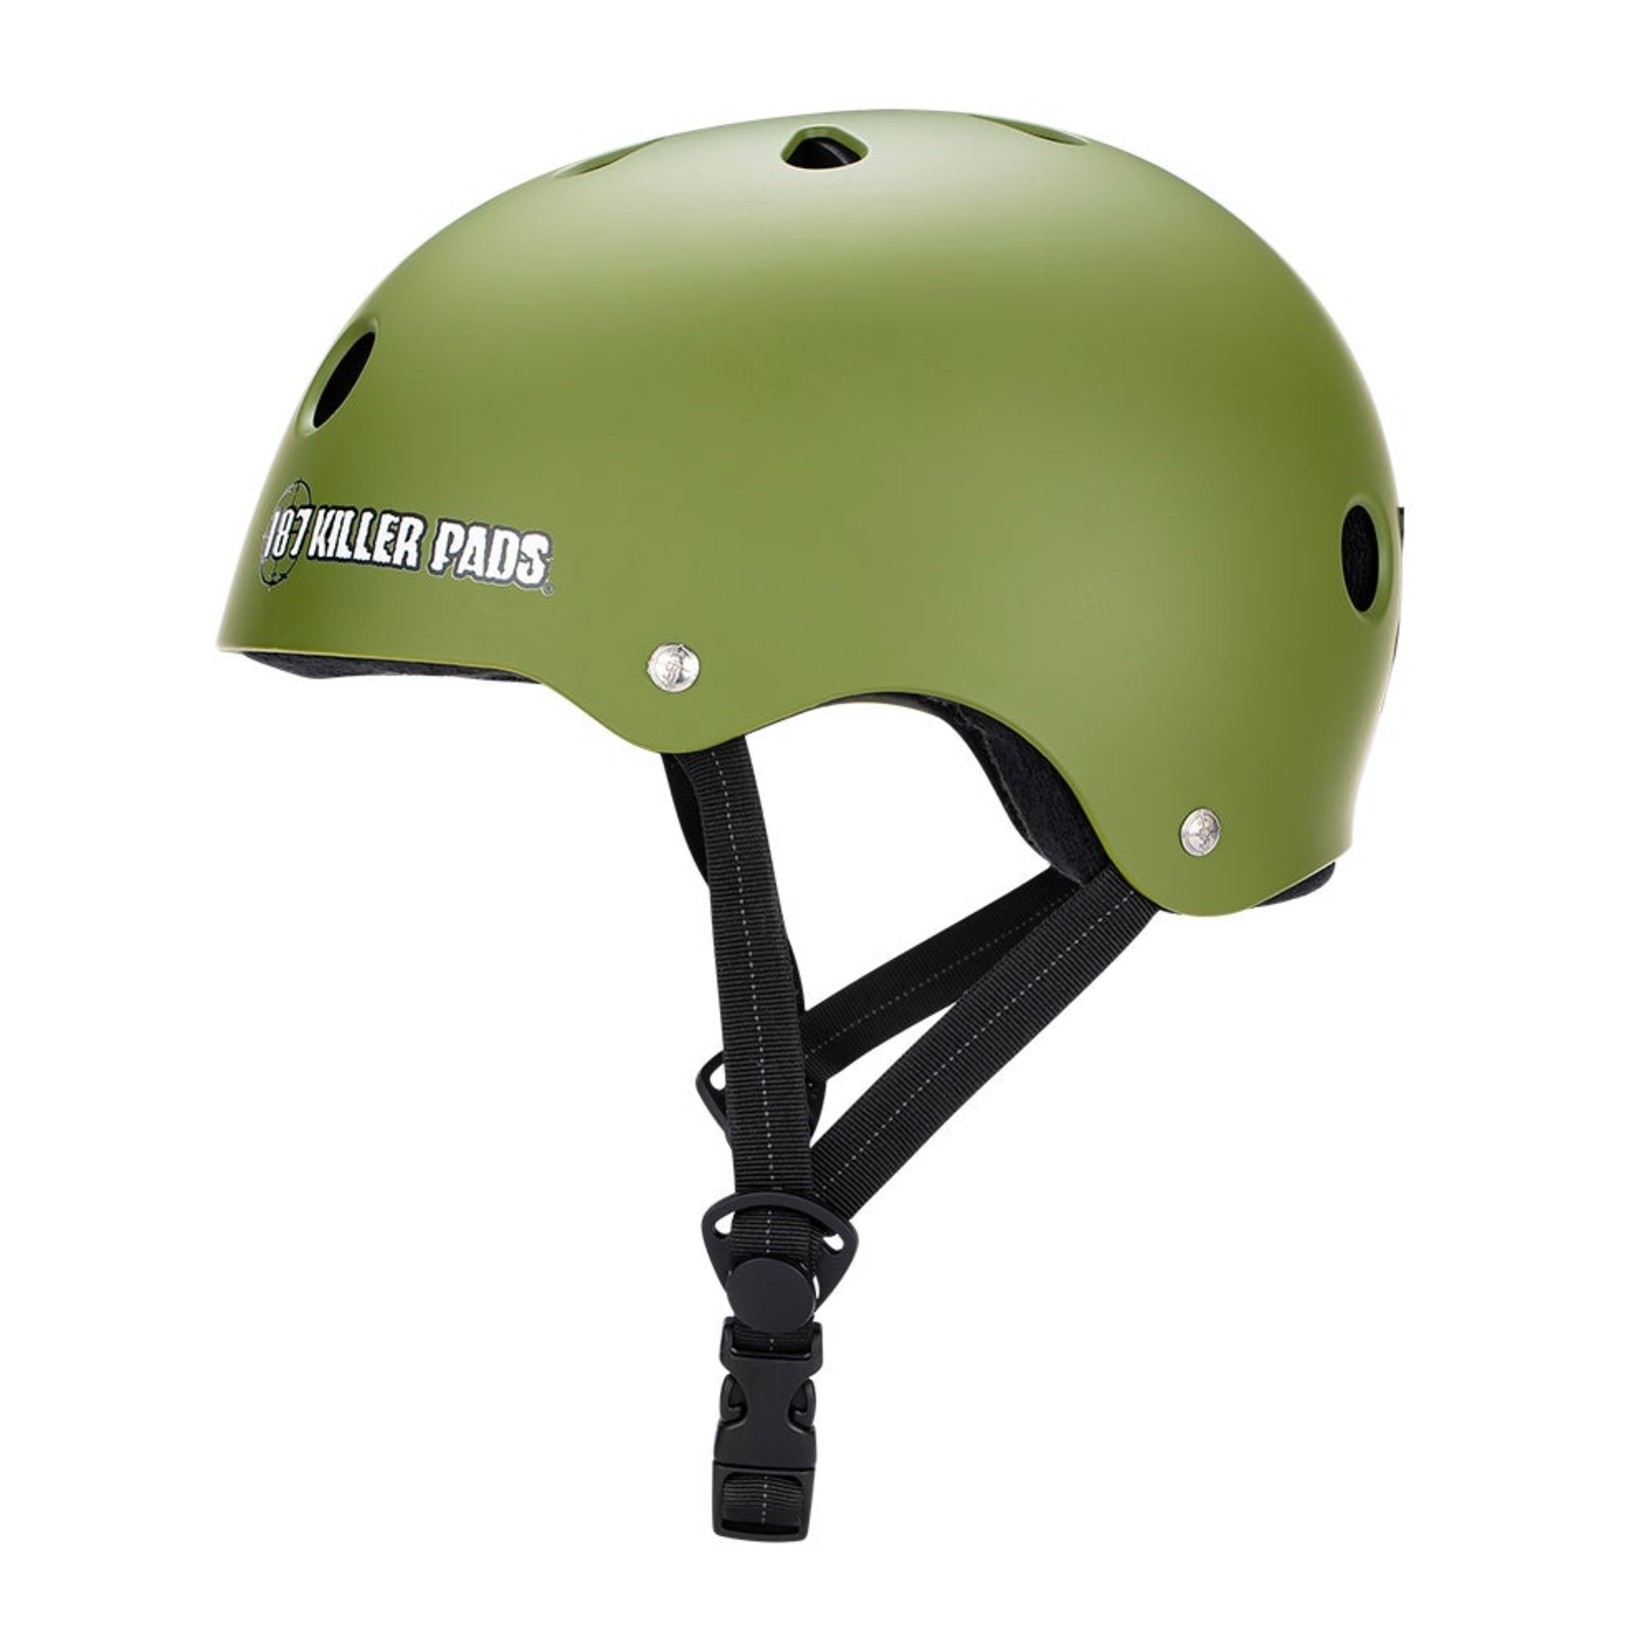 187 187 Pro Skate Sweatsaver Helmet - MD - Army Green Matte